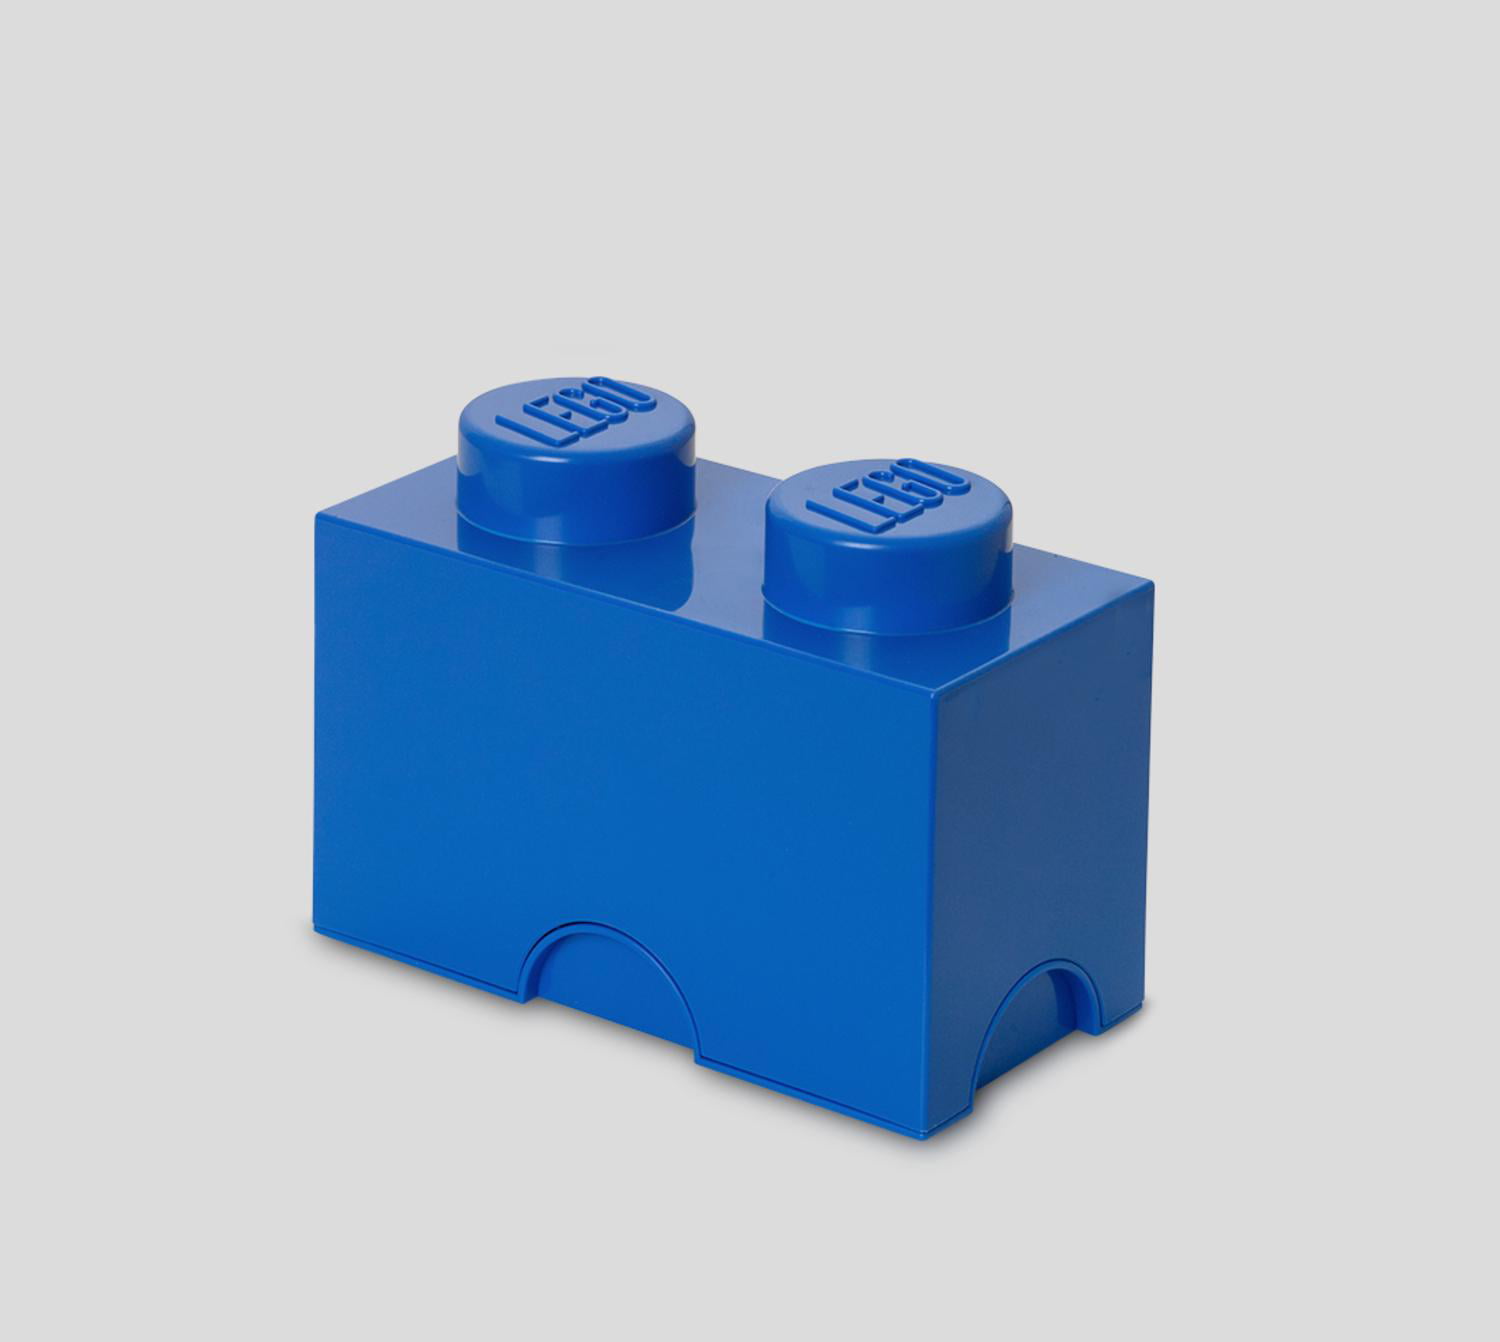 LEGO STORAGE BRICK 2 BLUE KIDS TOY STORAGE NEW FREE P+P 